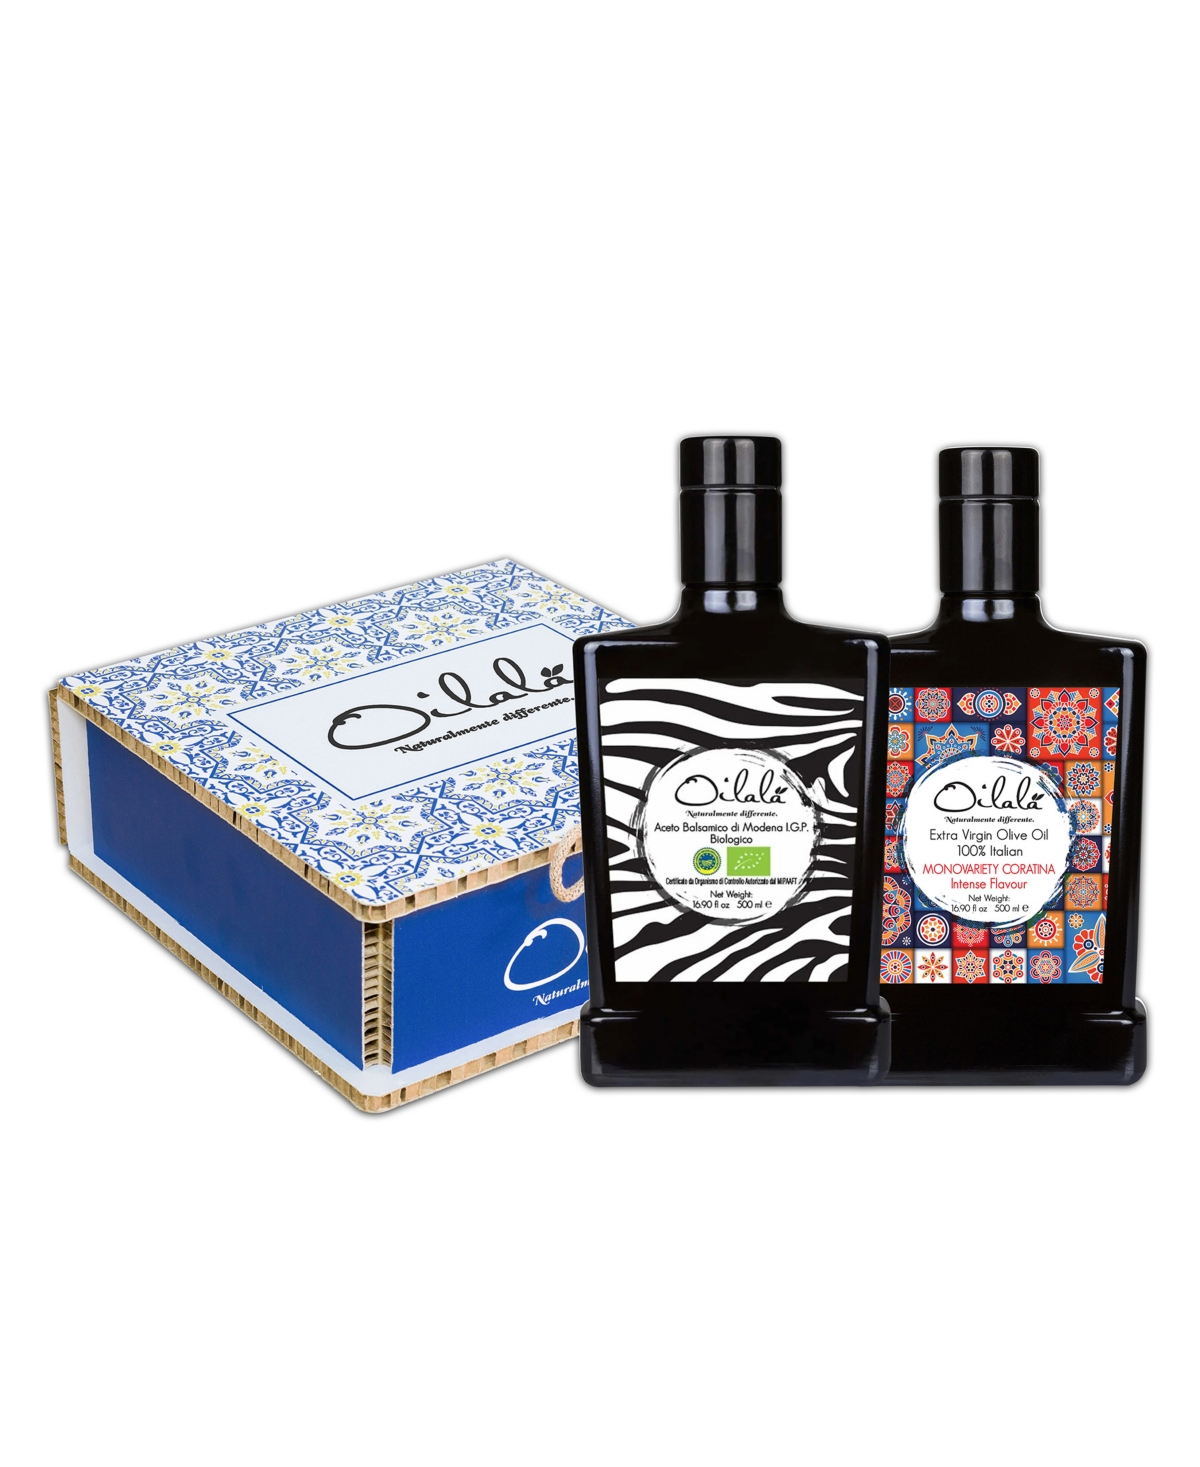 Oilala Olive Oil And Vinegar Gift Box Bottle, Set Of 2, 500 ml Each In Animal Print